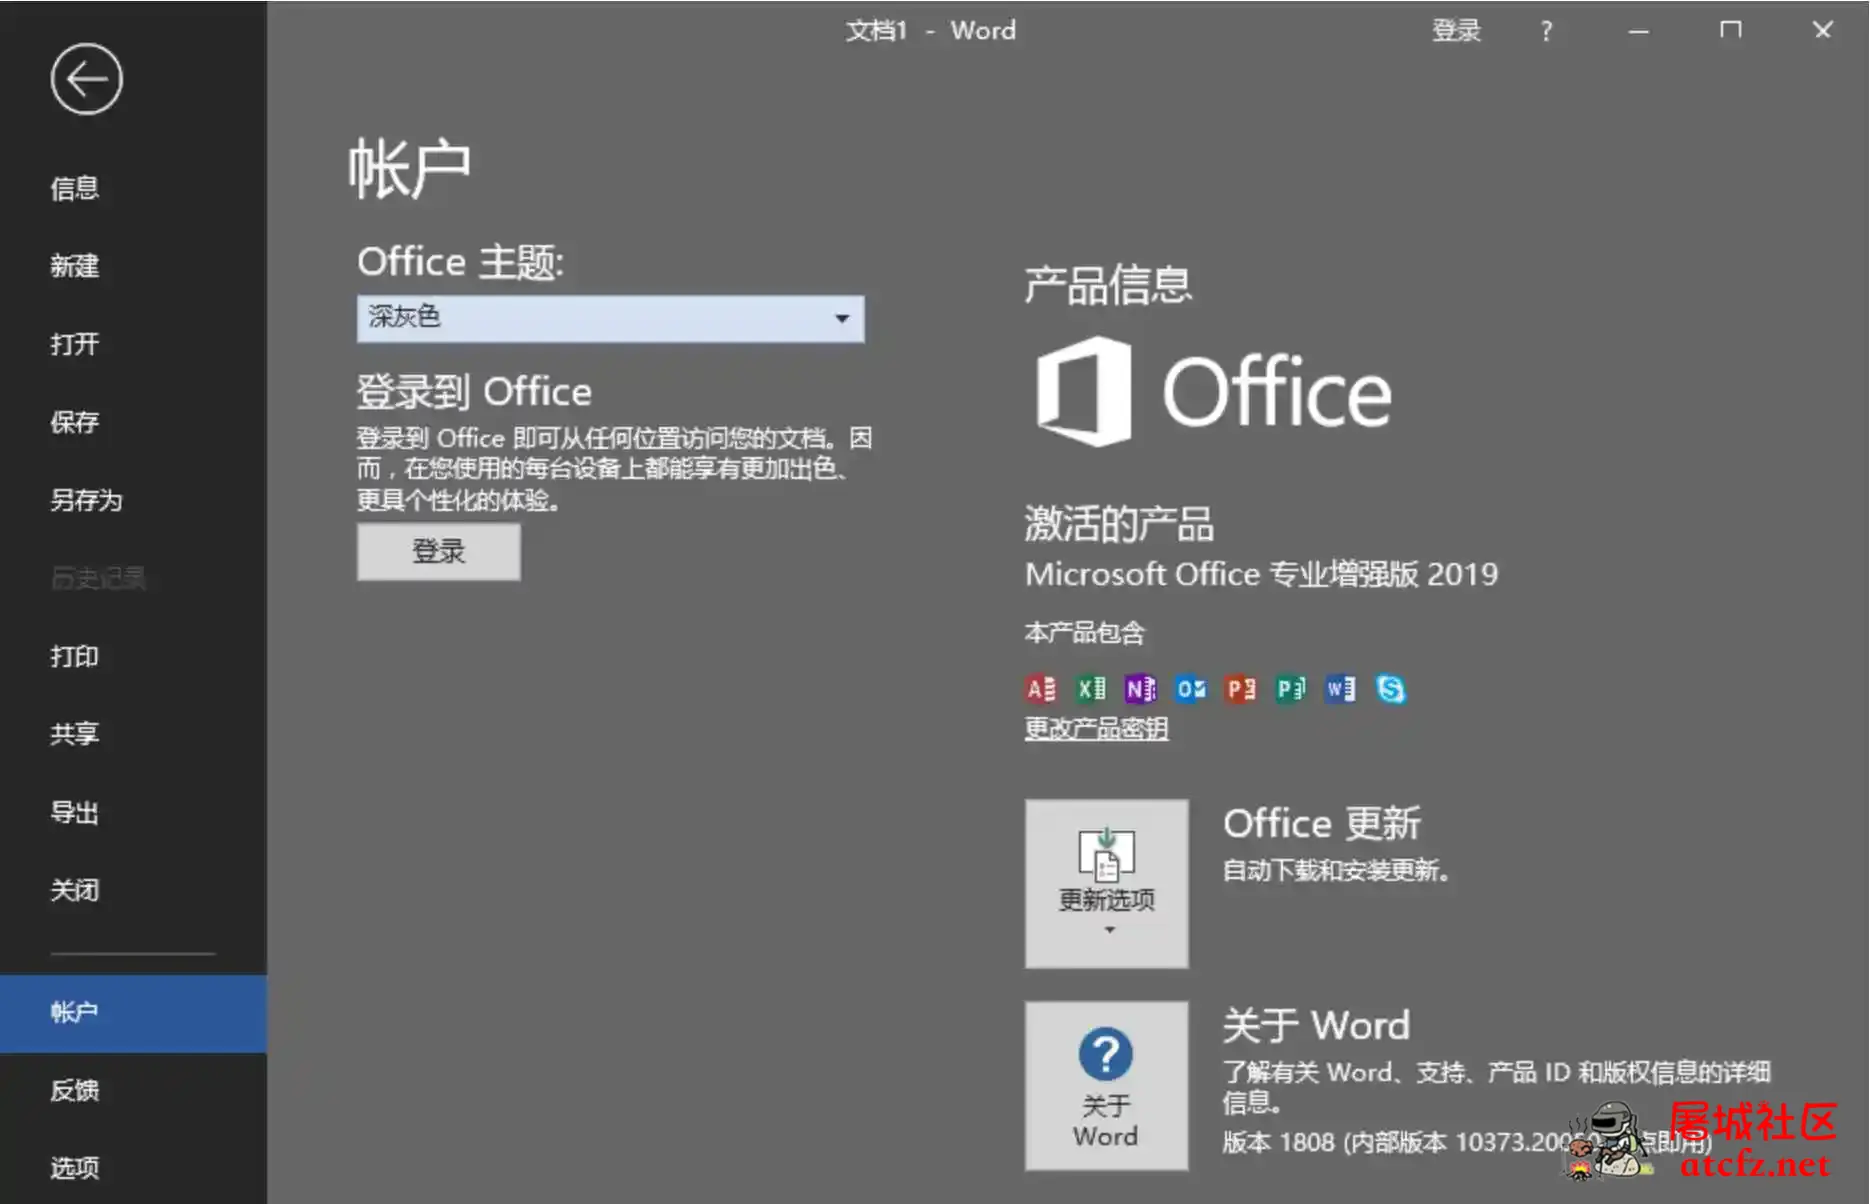 微软Office2019批量授权版批量授权商业版工具 屠城辅助网www.tcfz1.com1009